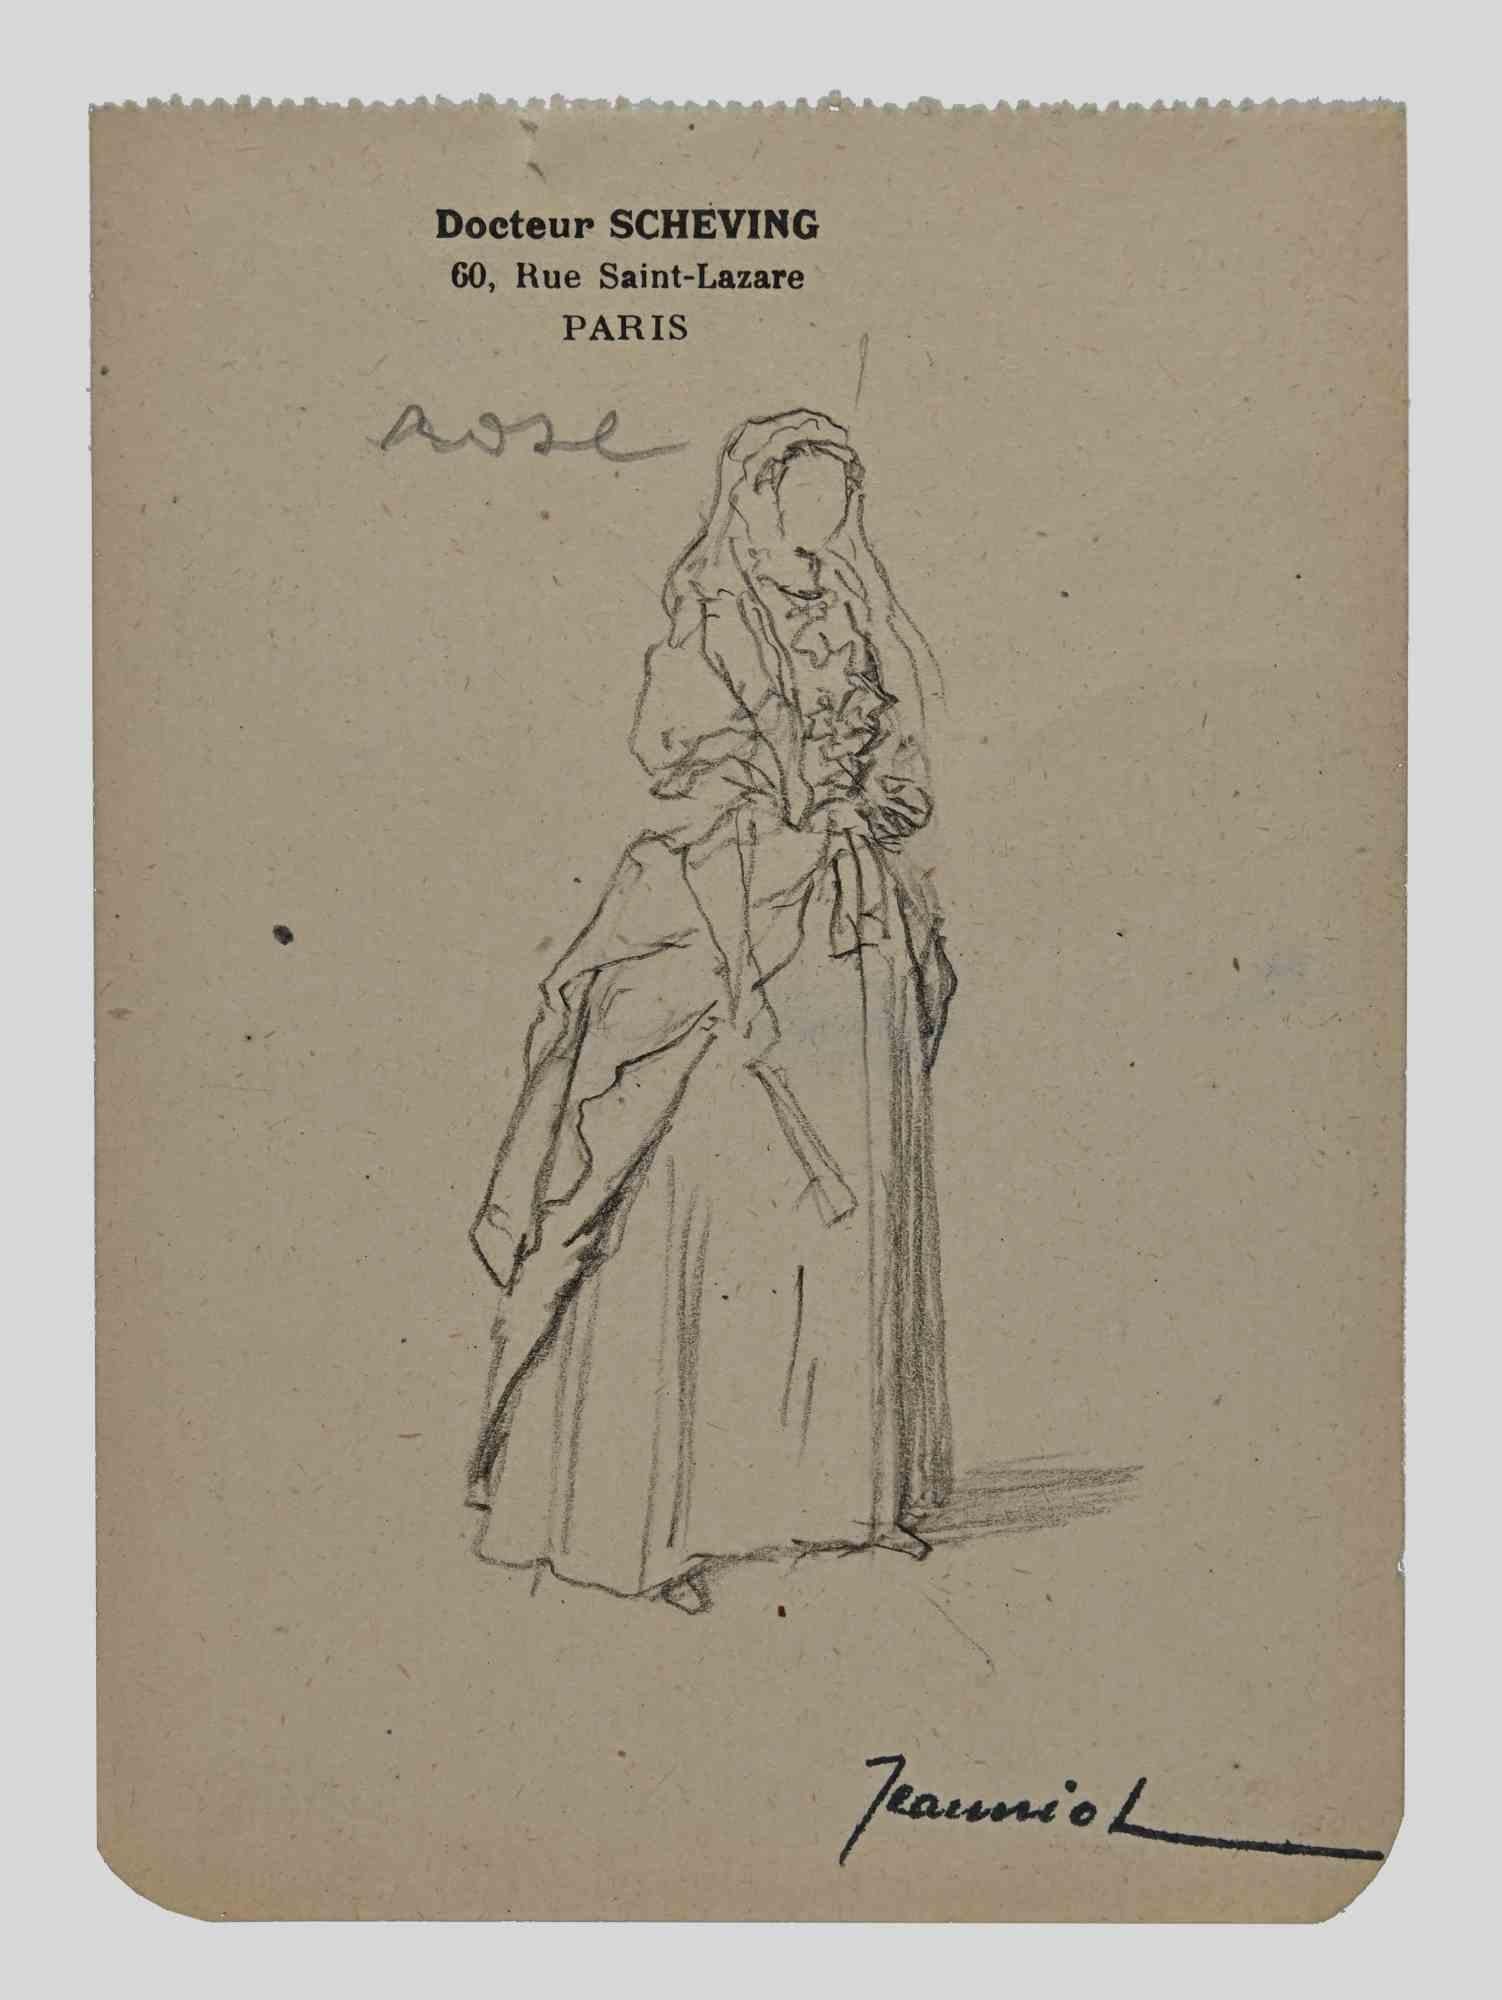 Frau ist eine Original-Zeichnung auf Papier des Malers Pierre Georges Jeanniot (1848-1934).

Zeichnen mit Bleistift.

Handsigniert auf der Unterseite.

Guter Zustand bis auf die Alterung.

Das Kunstwerk wird durch geschickte und schnelle Striche von